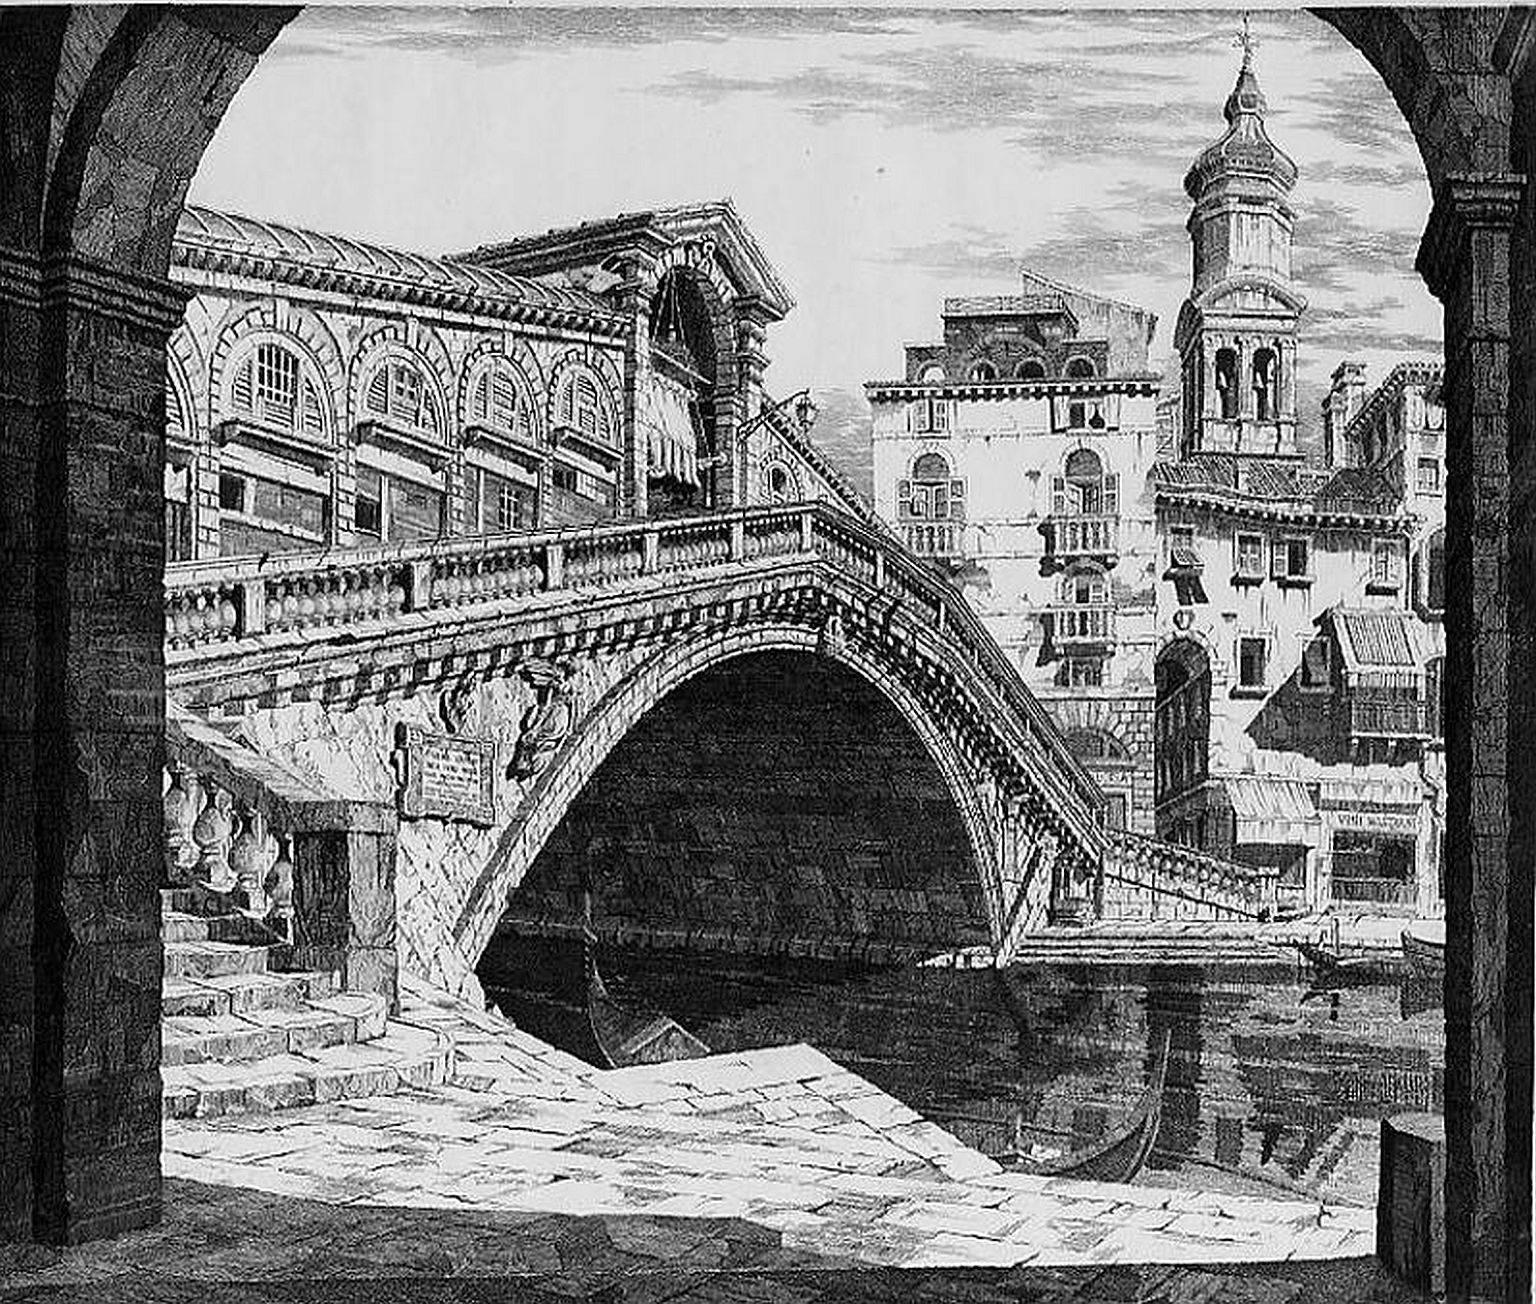 John Taylor Arms Landscape Print - Shadows of Venice or Il Ponte Di Rialto, Venezia